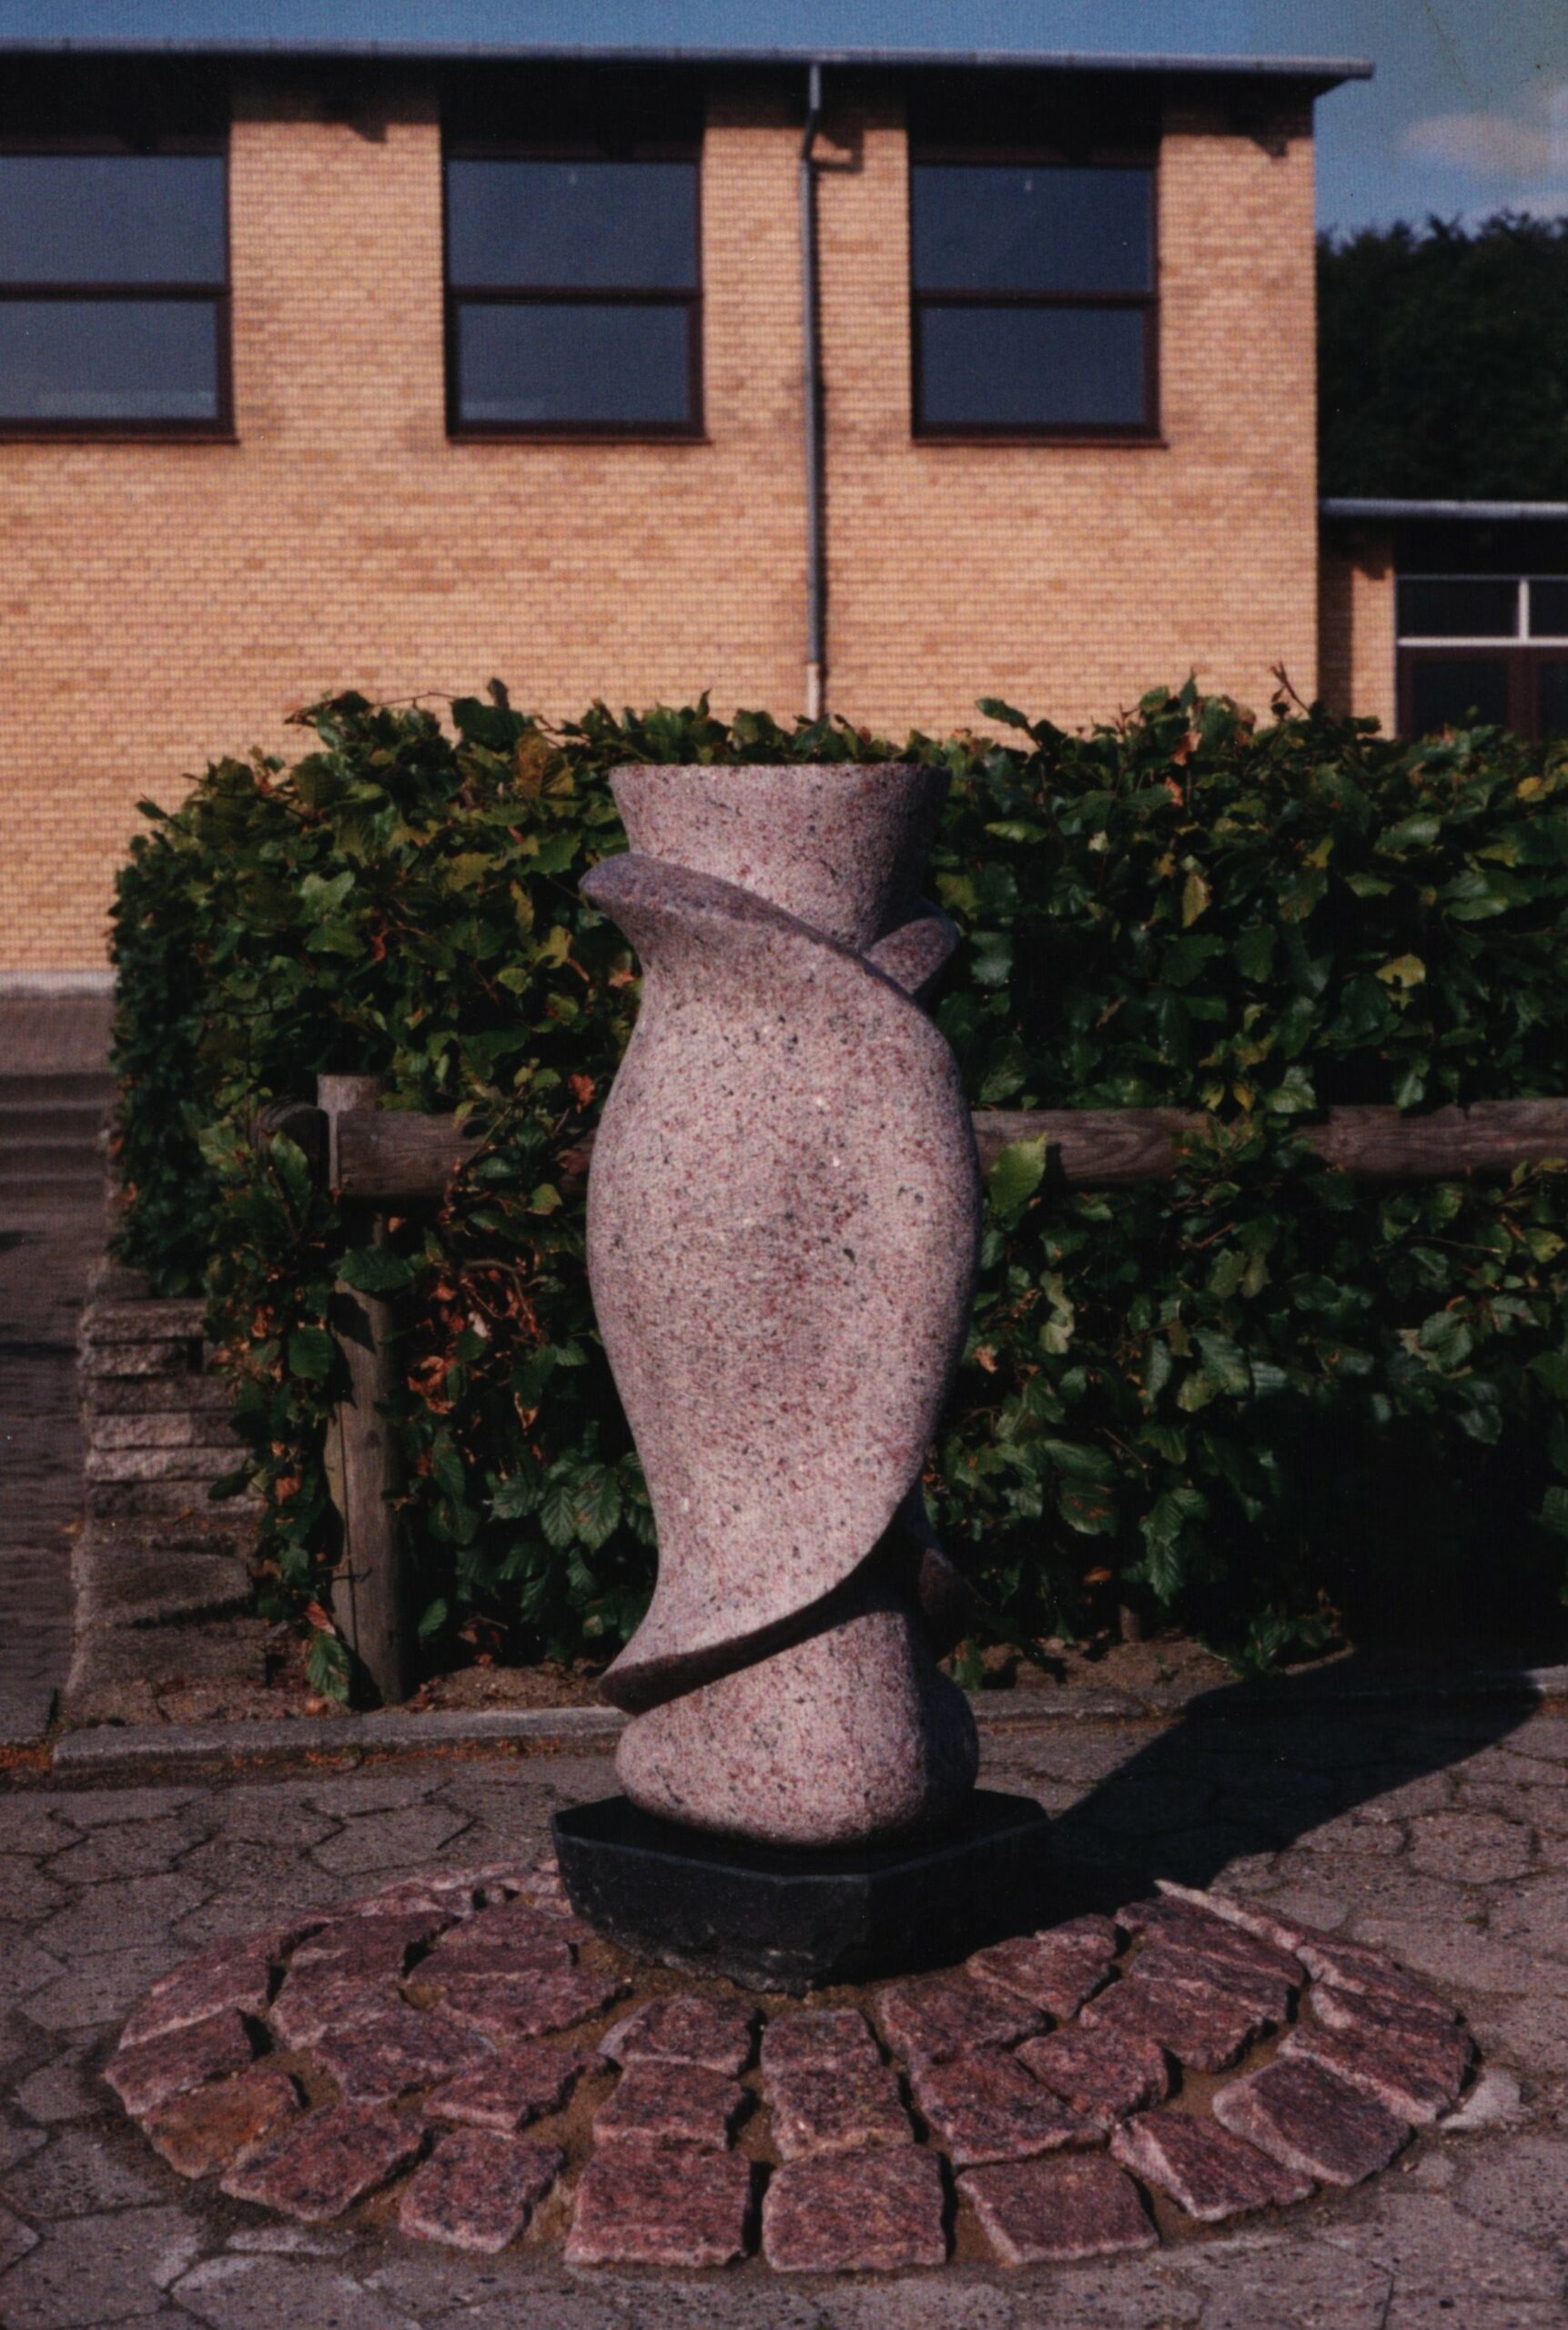 Det vi ikke ved . Skulptur, granit. Steen Krarup Jensen. Del af udsmykningen Herfra Min verden går. Hou Skole. Dateret 1993.